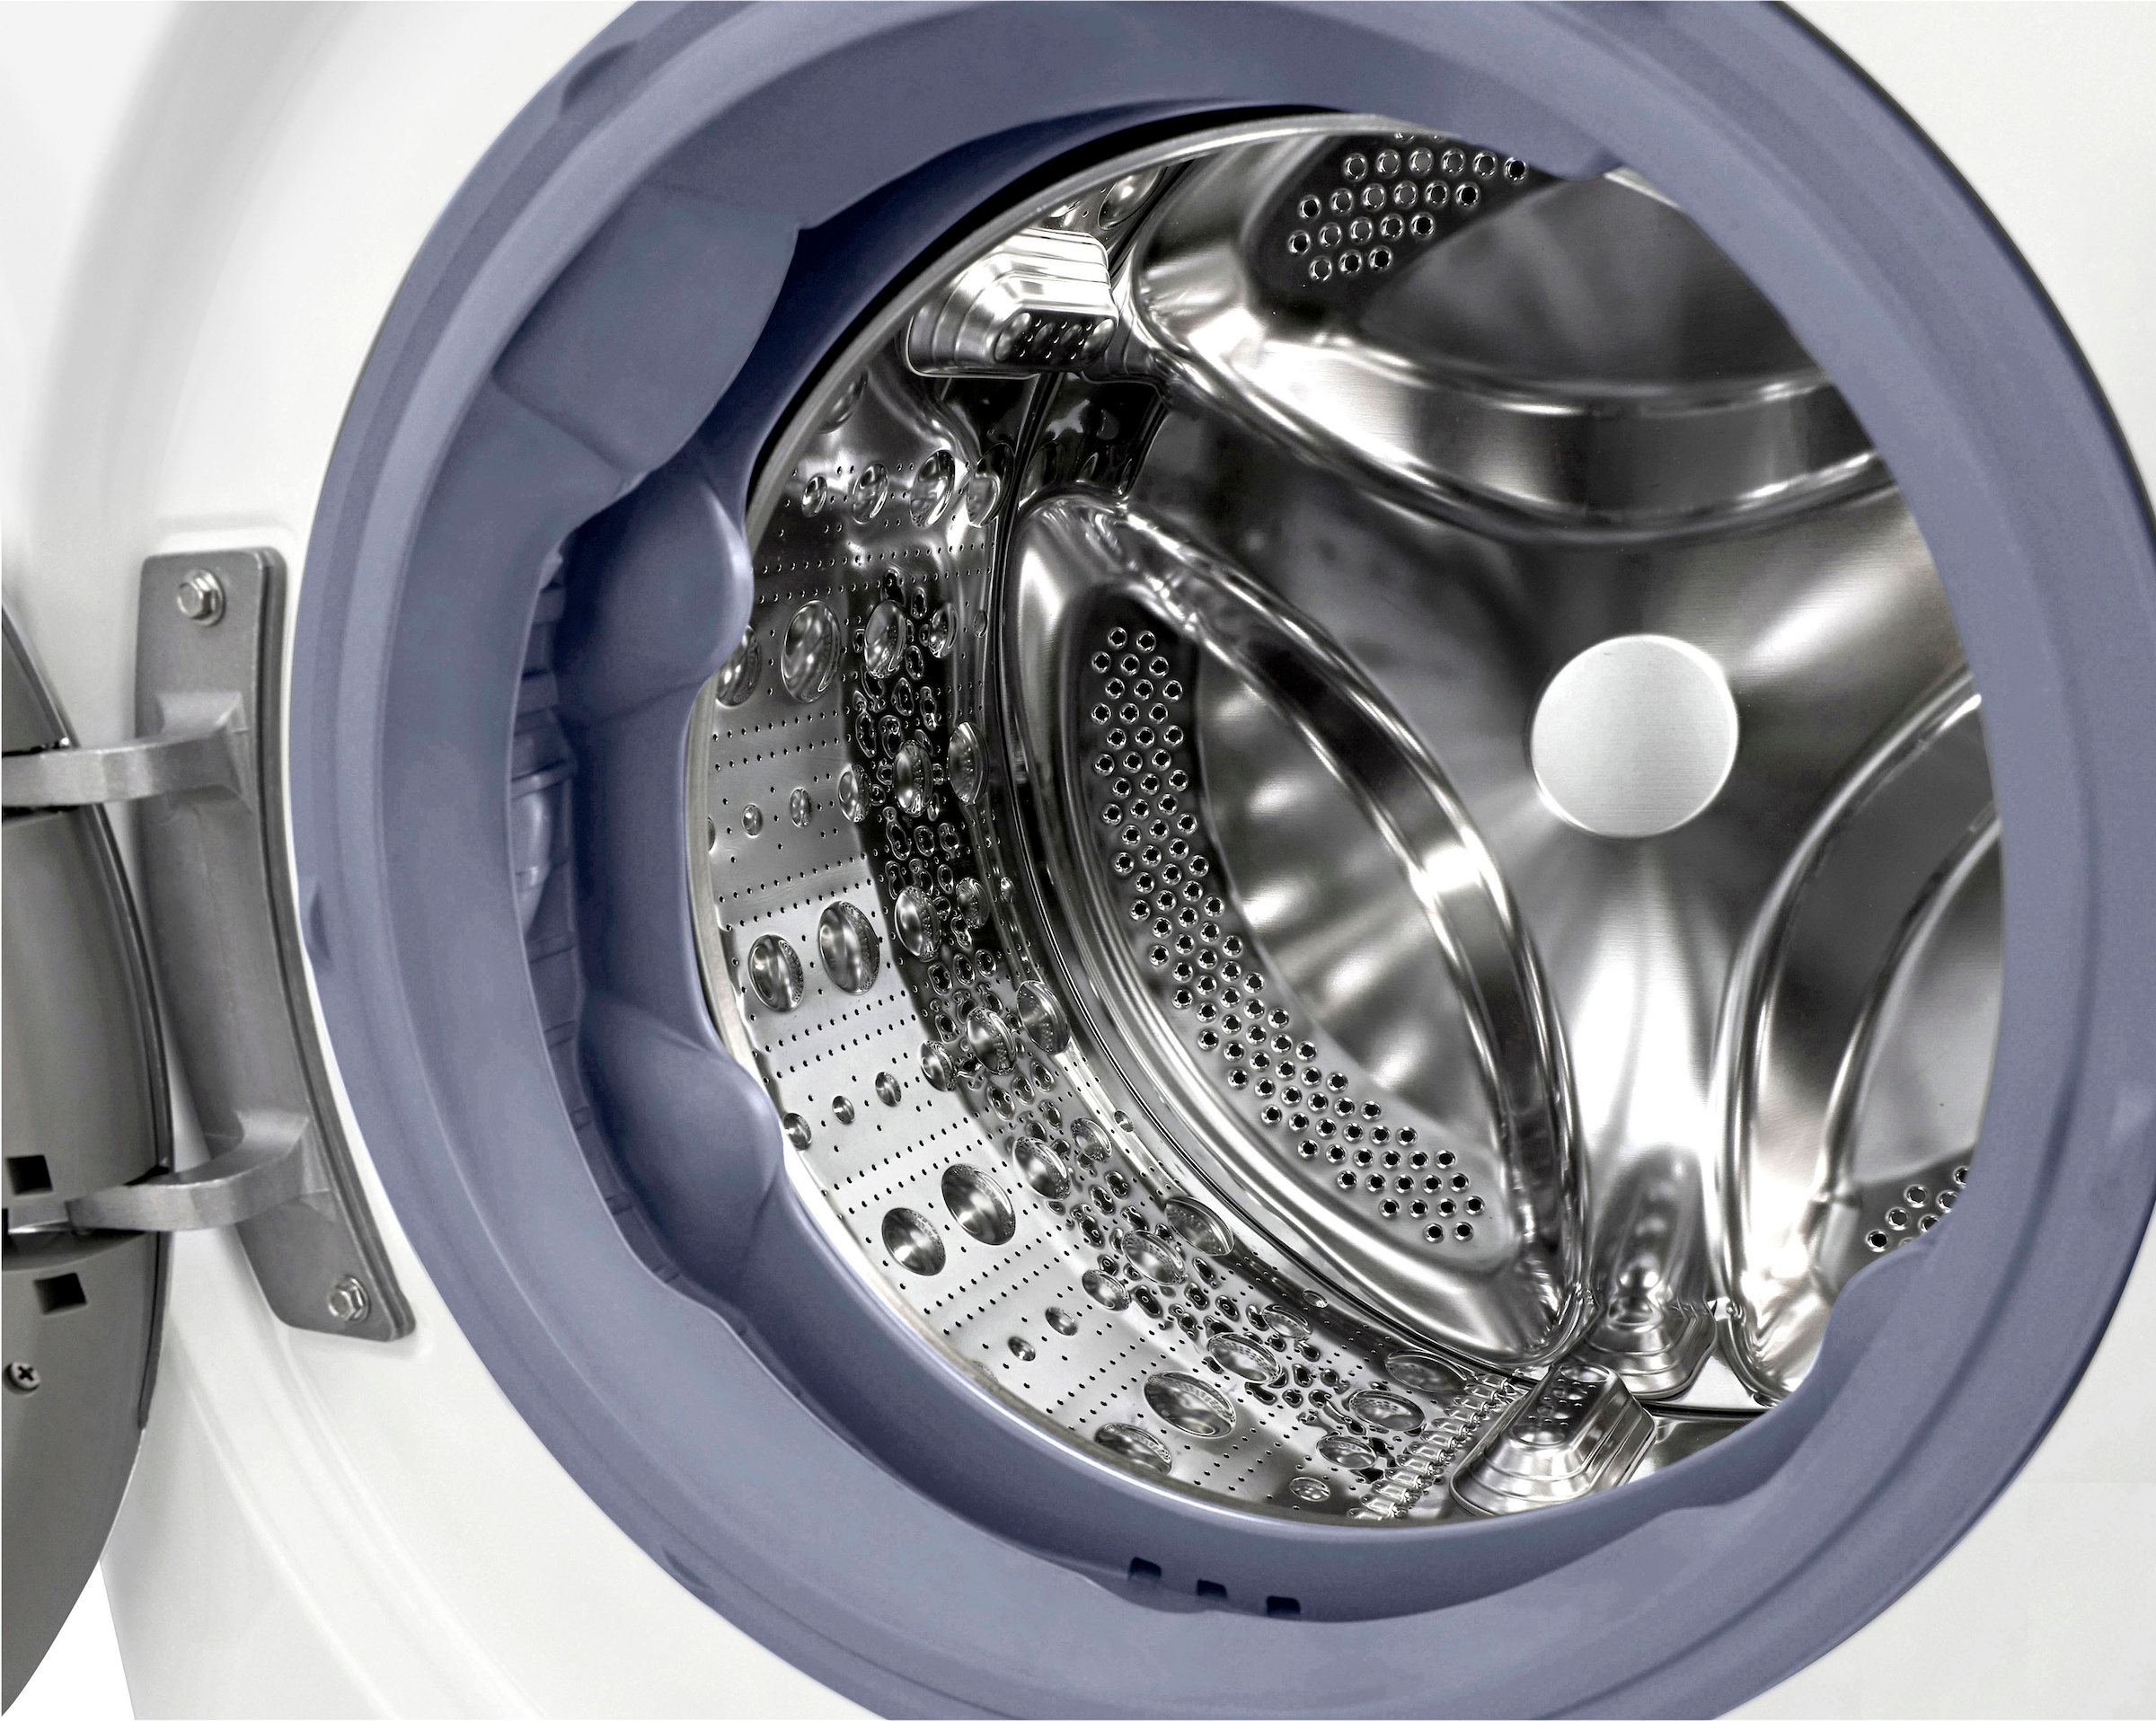 - kg, nur F6WV710P1, in TurboWash® Waschmaschine »F6WV710P1«, U/min, Minuten OTTO 10,5 39 Waschen bei LG 1600